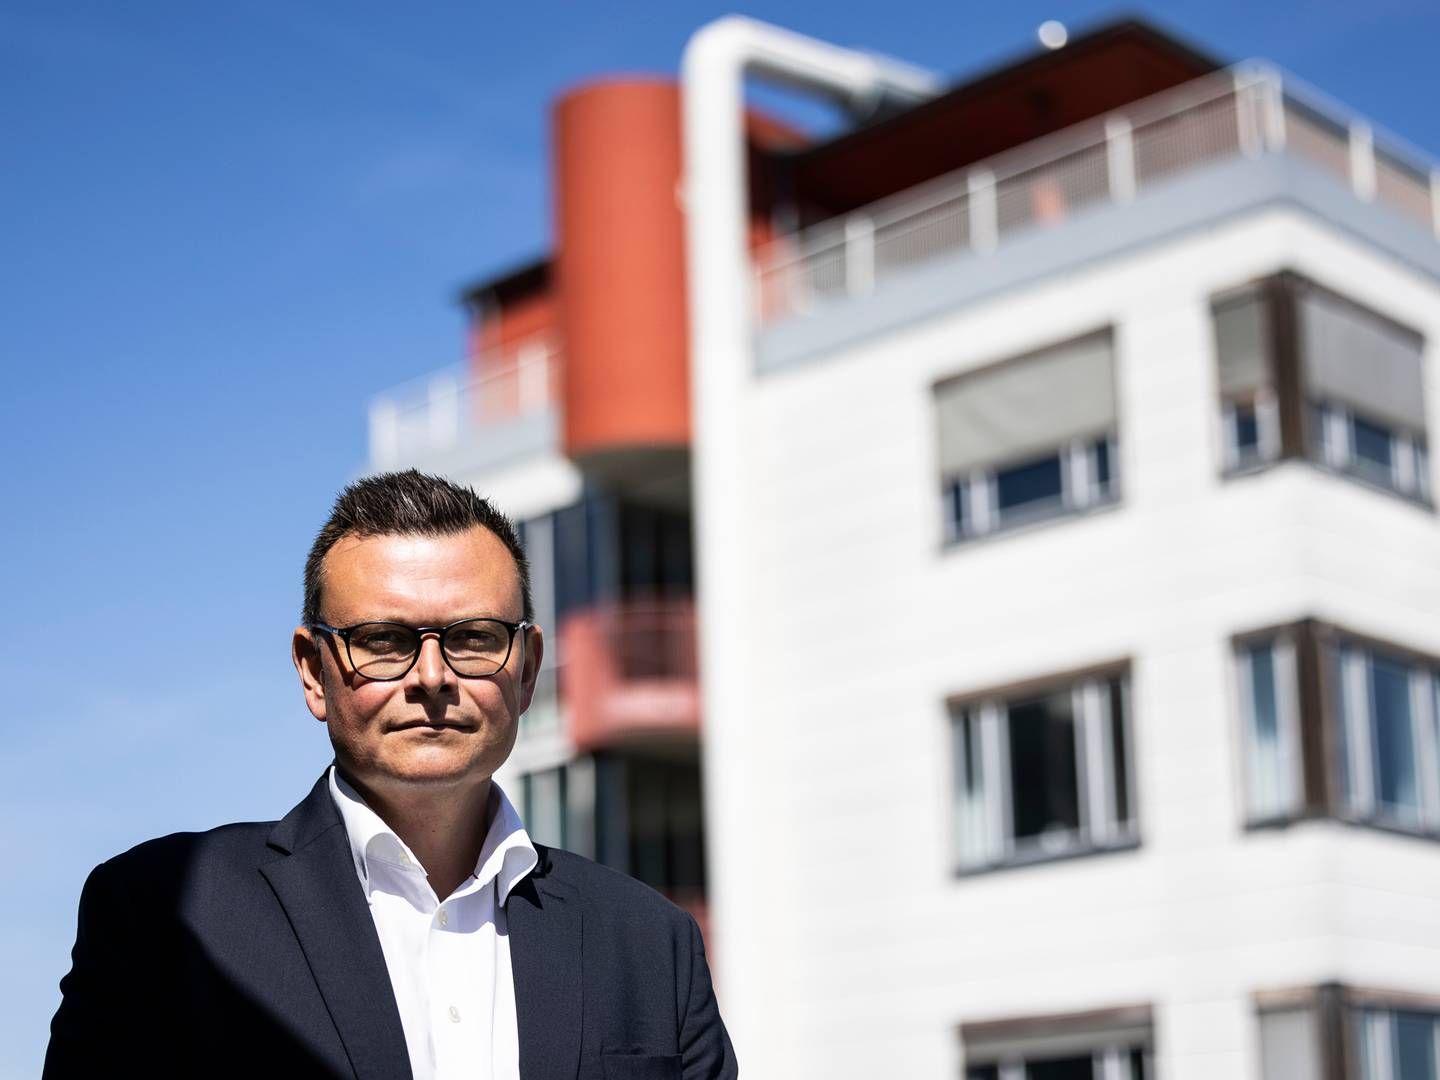 Fremadrettet vil Nordea være opsøgende i jagten på nye kunder til ejendomsfinansiering i flere afkroge af Danmark ifølge den nye head of real estate i erhvervsafdelingen, Morten Egon Jørgensen. | Foto: PR / Nordea